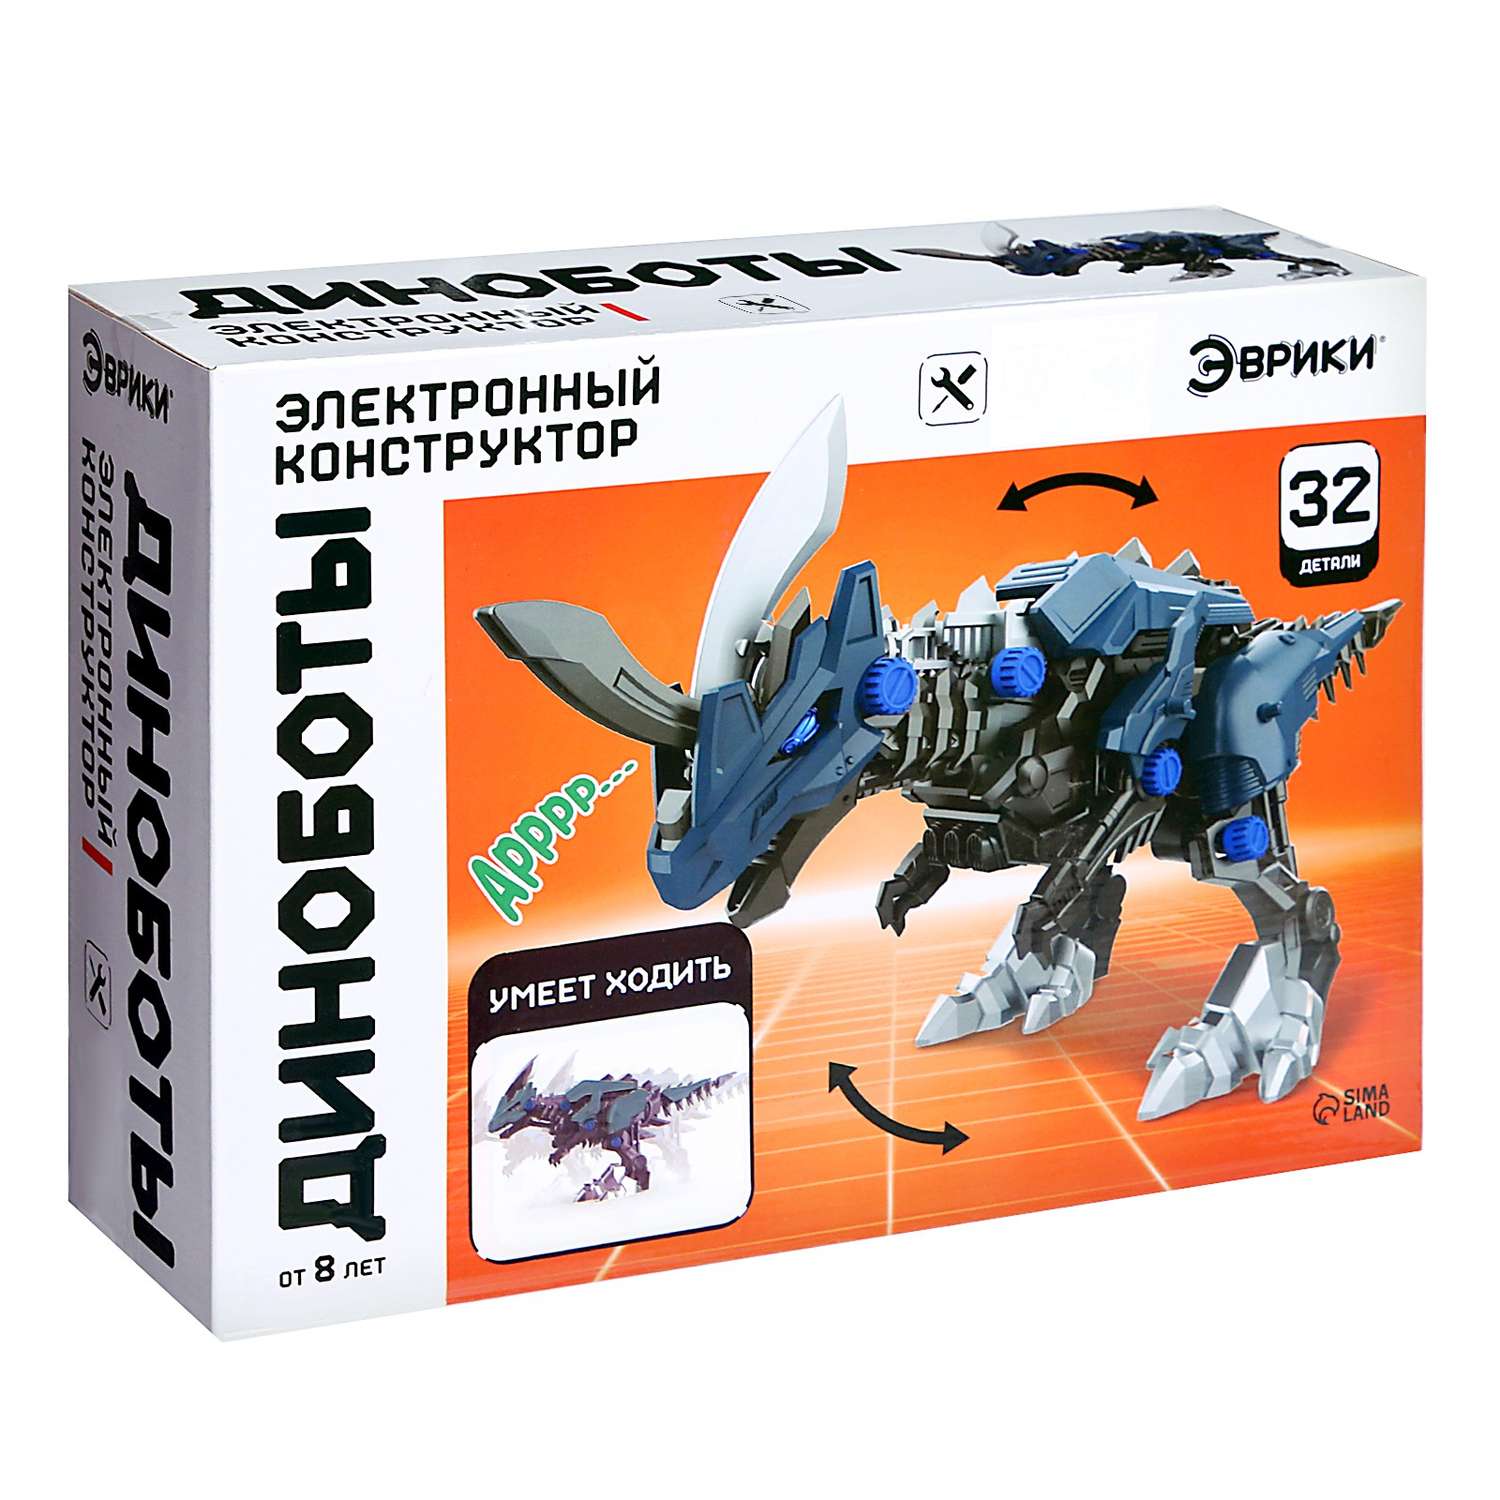 Электронный конструктор Эврики «Диноботы» цератозавр - фото 2